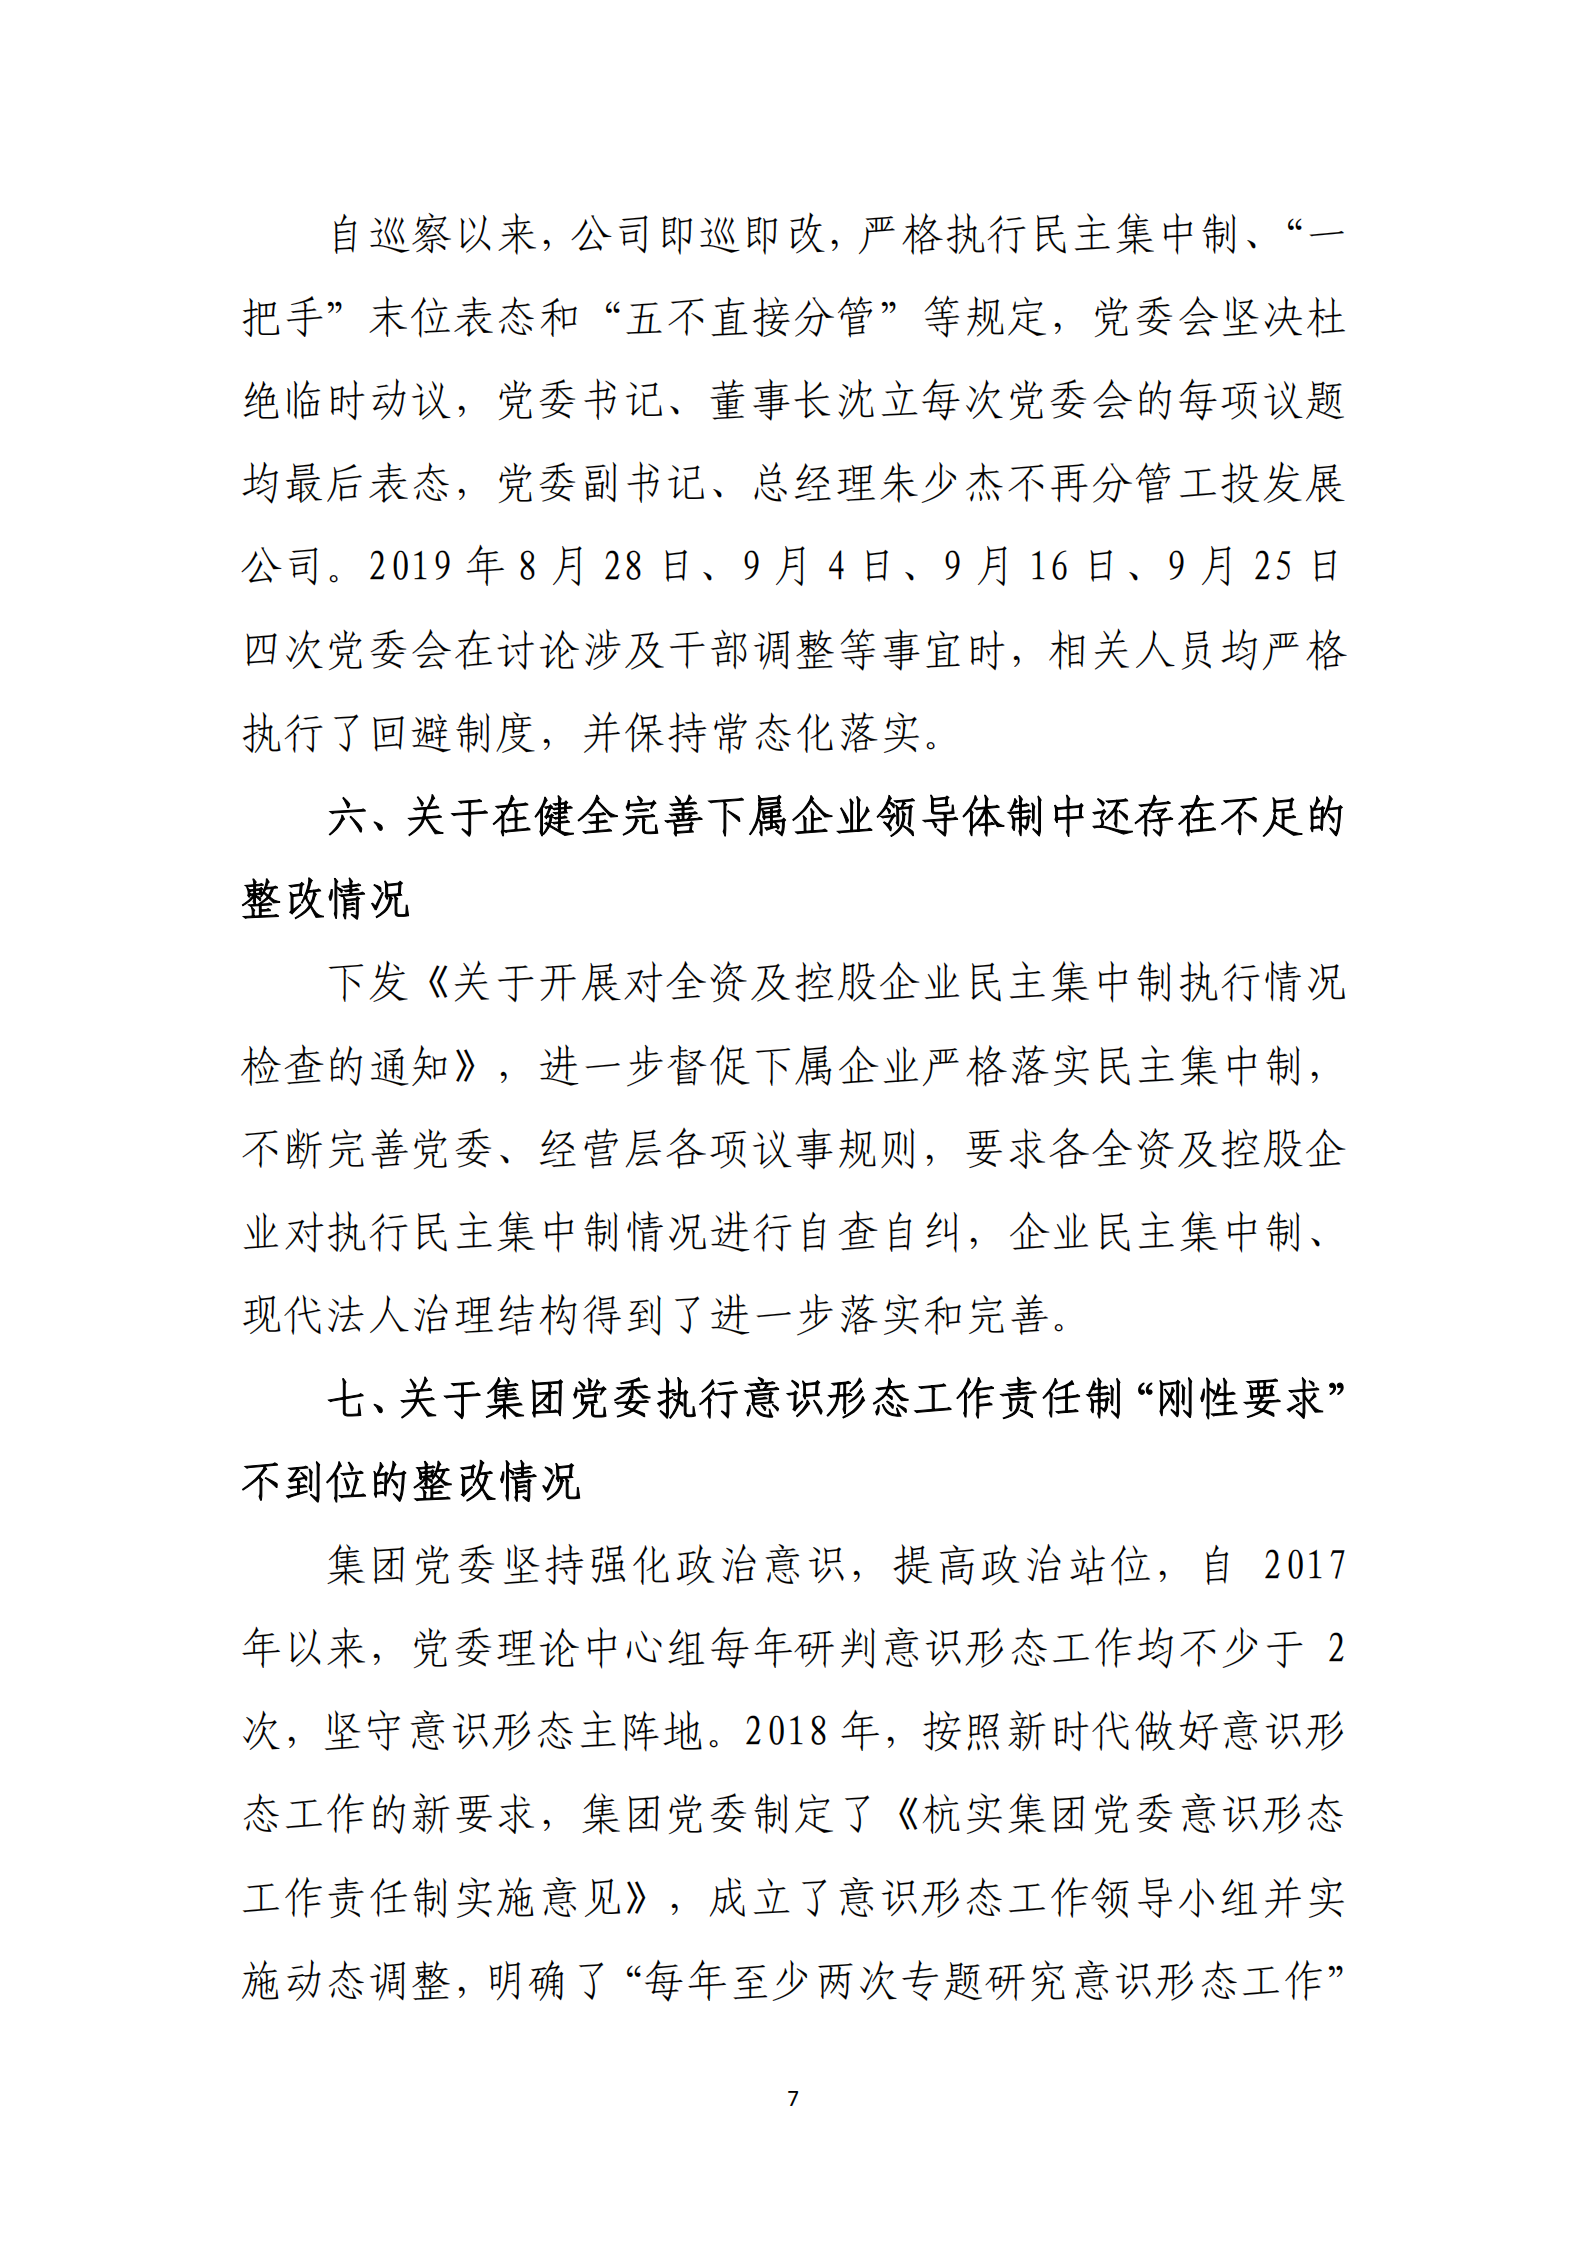 乐虎国际游戏官网党委关于巡察整改情况的通报_06.png